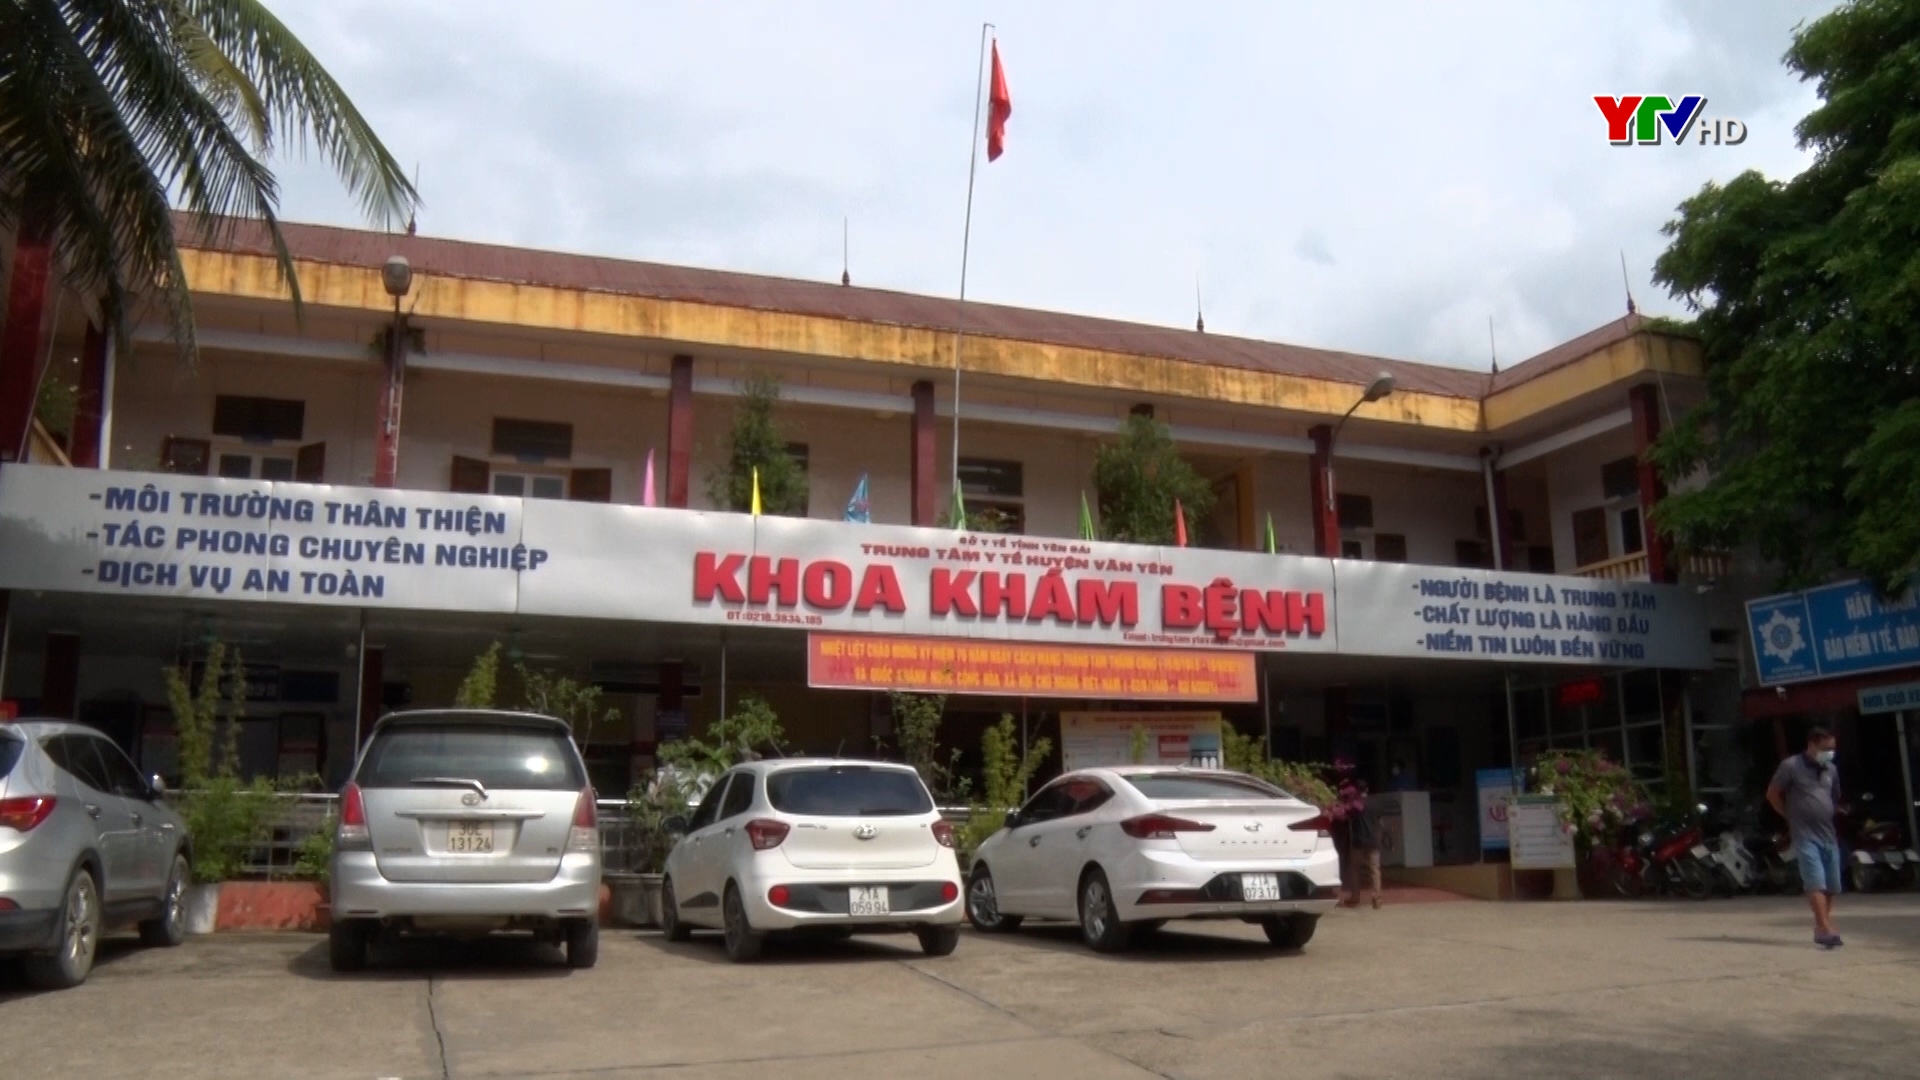 Trung tâm Y tế huyện Văn Yên xây dựng “Bệnh viện hạnh phúc”